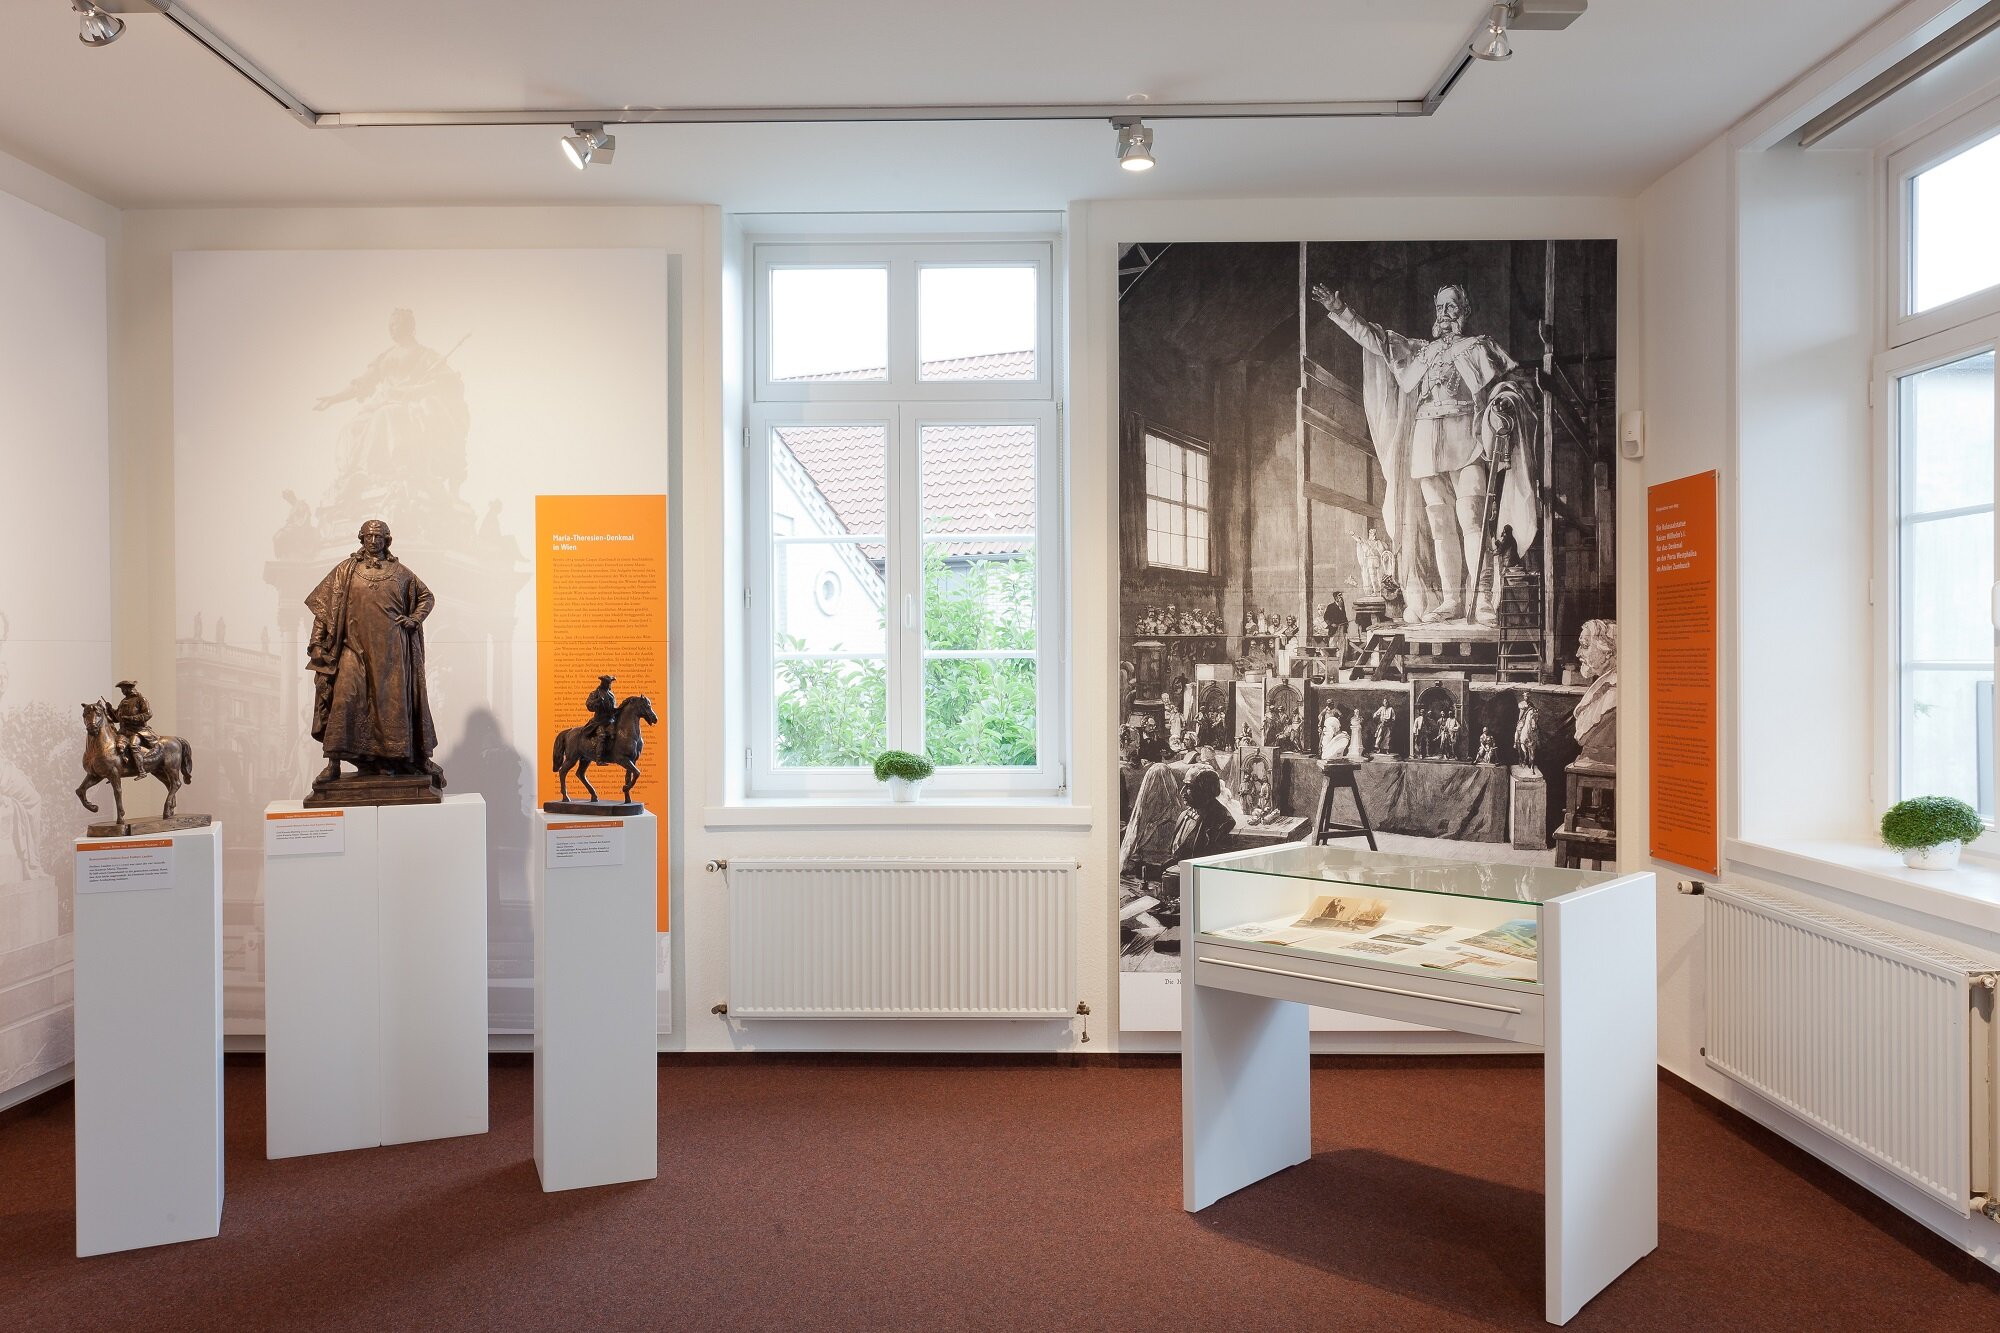 Dauerausstellung zum Leben und Werk des Bildhauers von Zumbusch